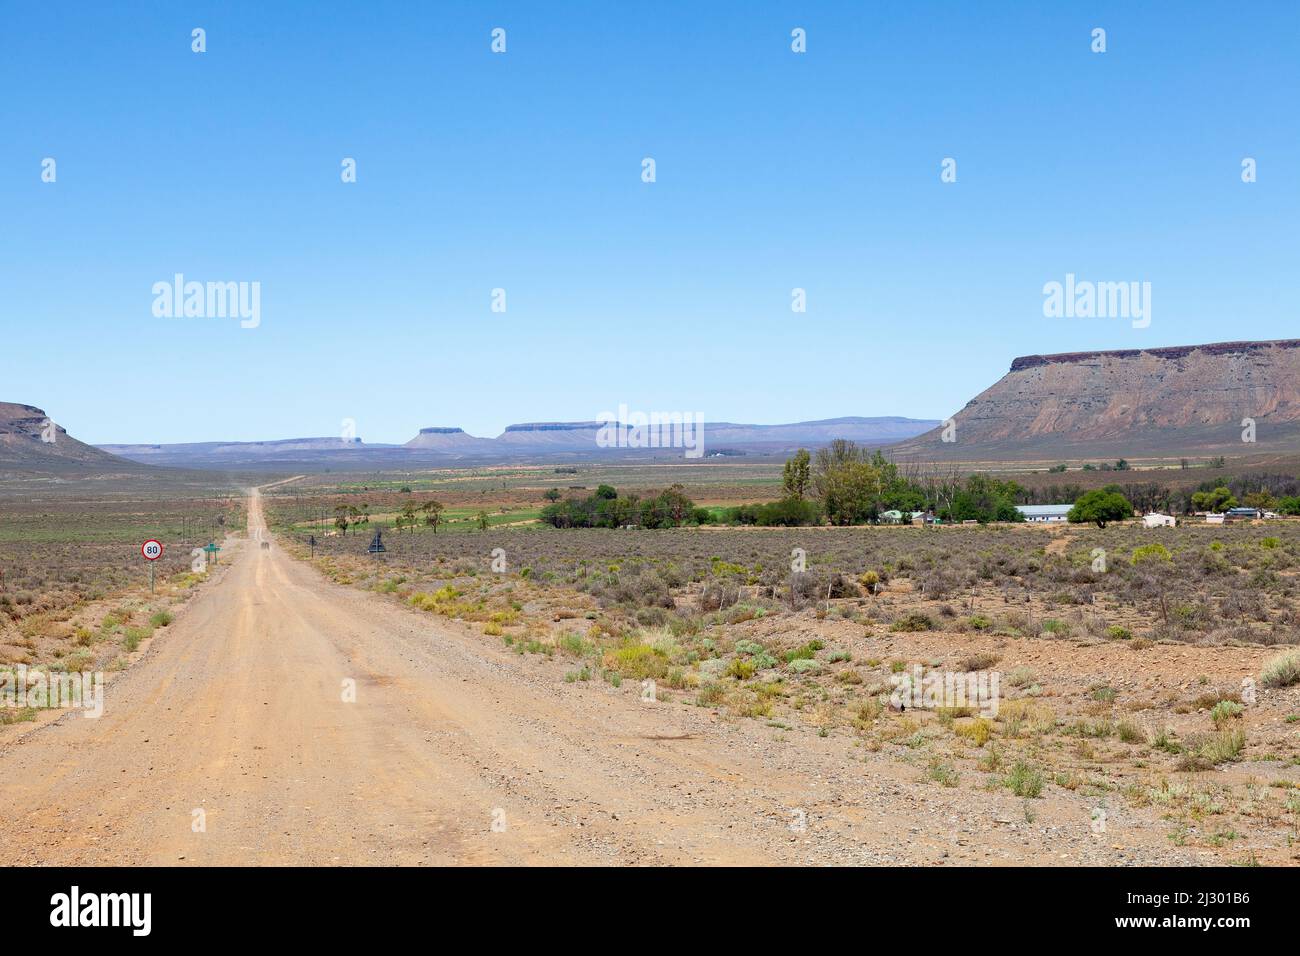 Paisaje panorámico de Karoo en el camino a Sutherland con koppies de superficie plana y granja rural, Sudáfrica Foto de stock